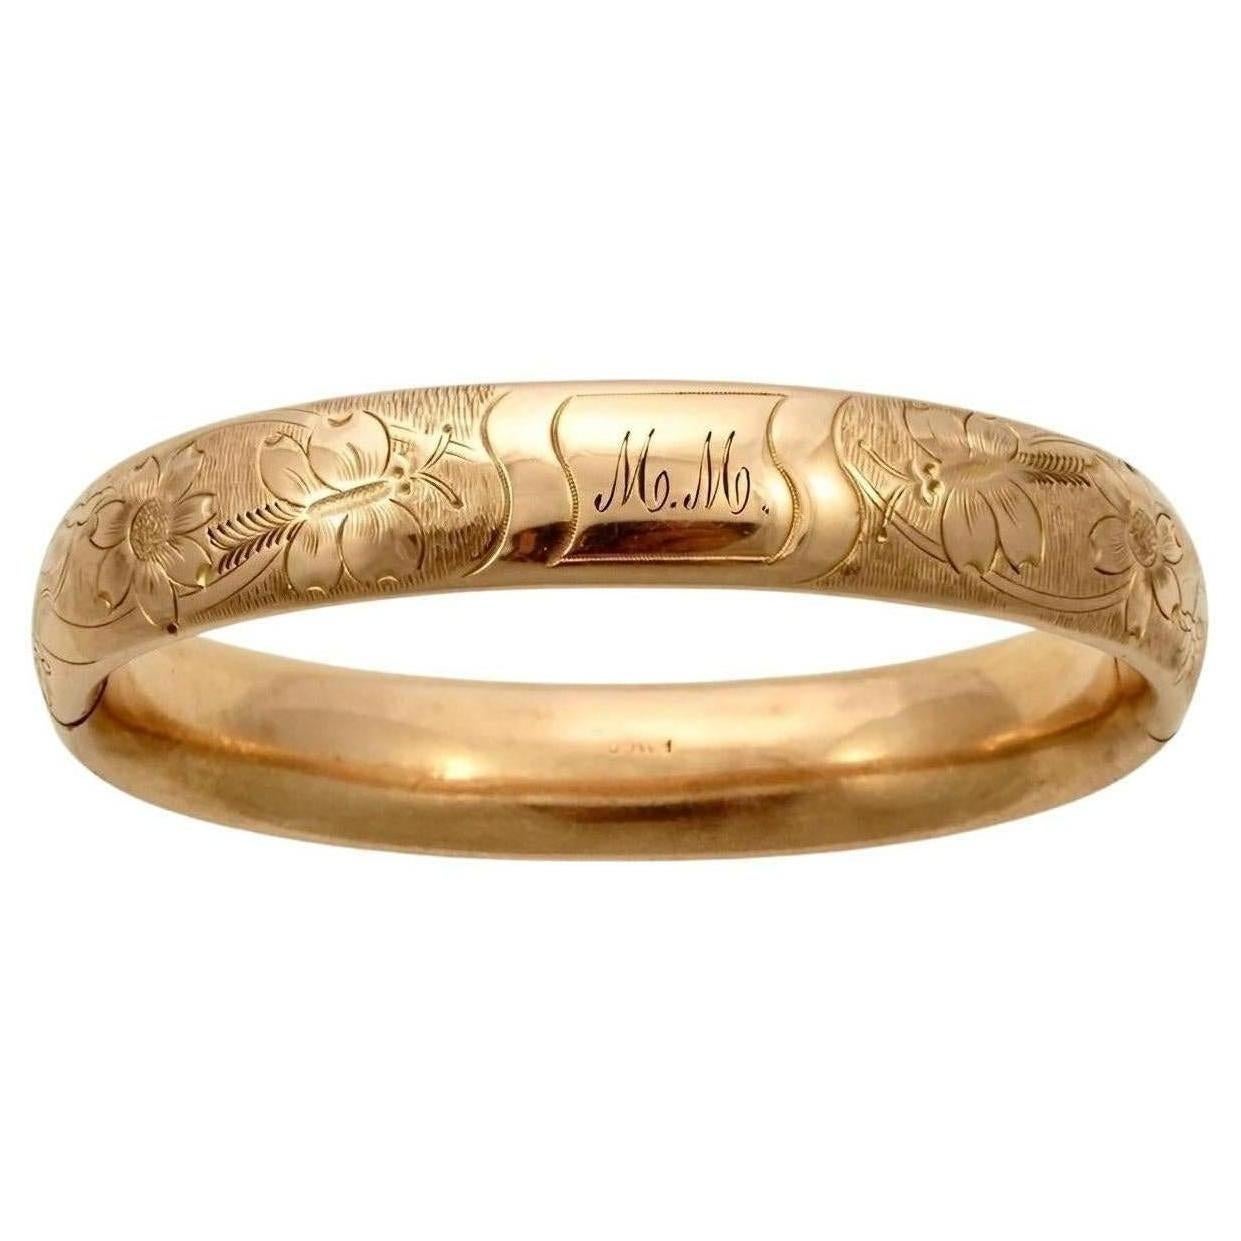 FMCO magnifique bracelet gravé en or rose antique, avec des fleurs et des papillons. FMCO signifie Finberg Manufacturing Company.  Il s'ouvre à l'aide d'un bouton poussoir. Le bracelet est légèrement ovale, les dimensions intérieures sont de 6,2 cm